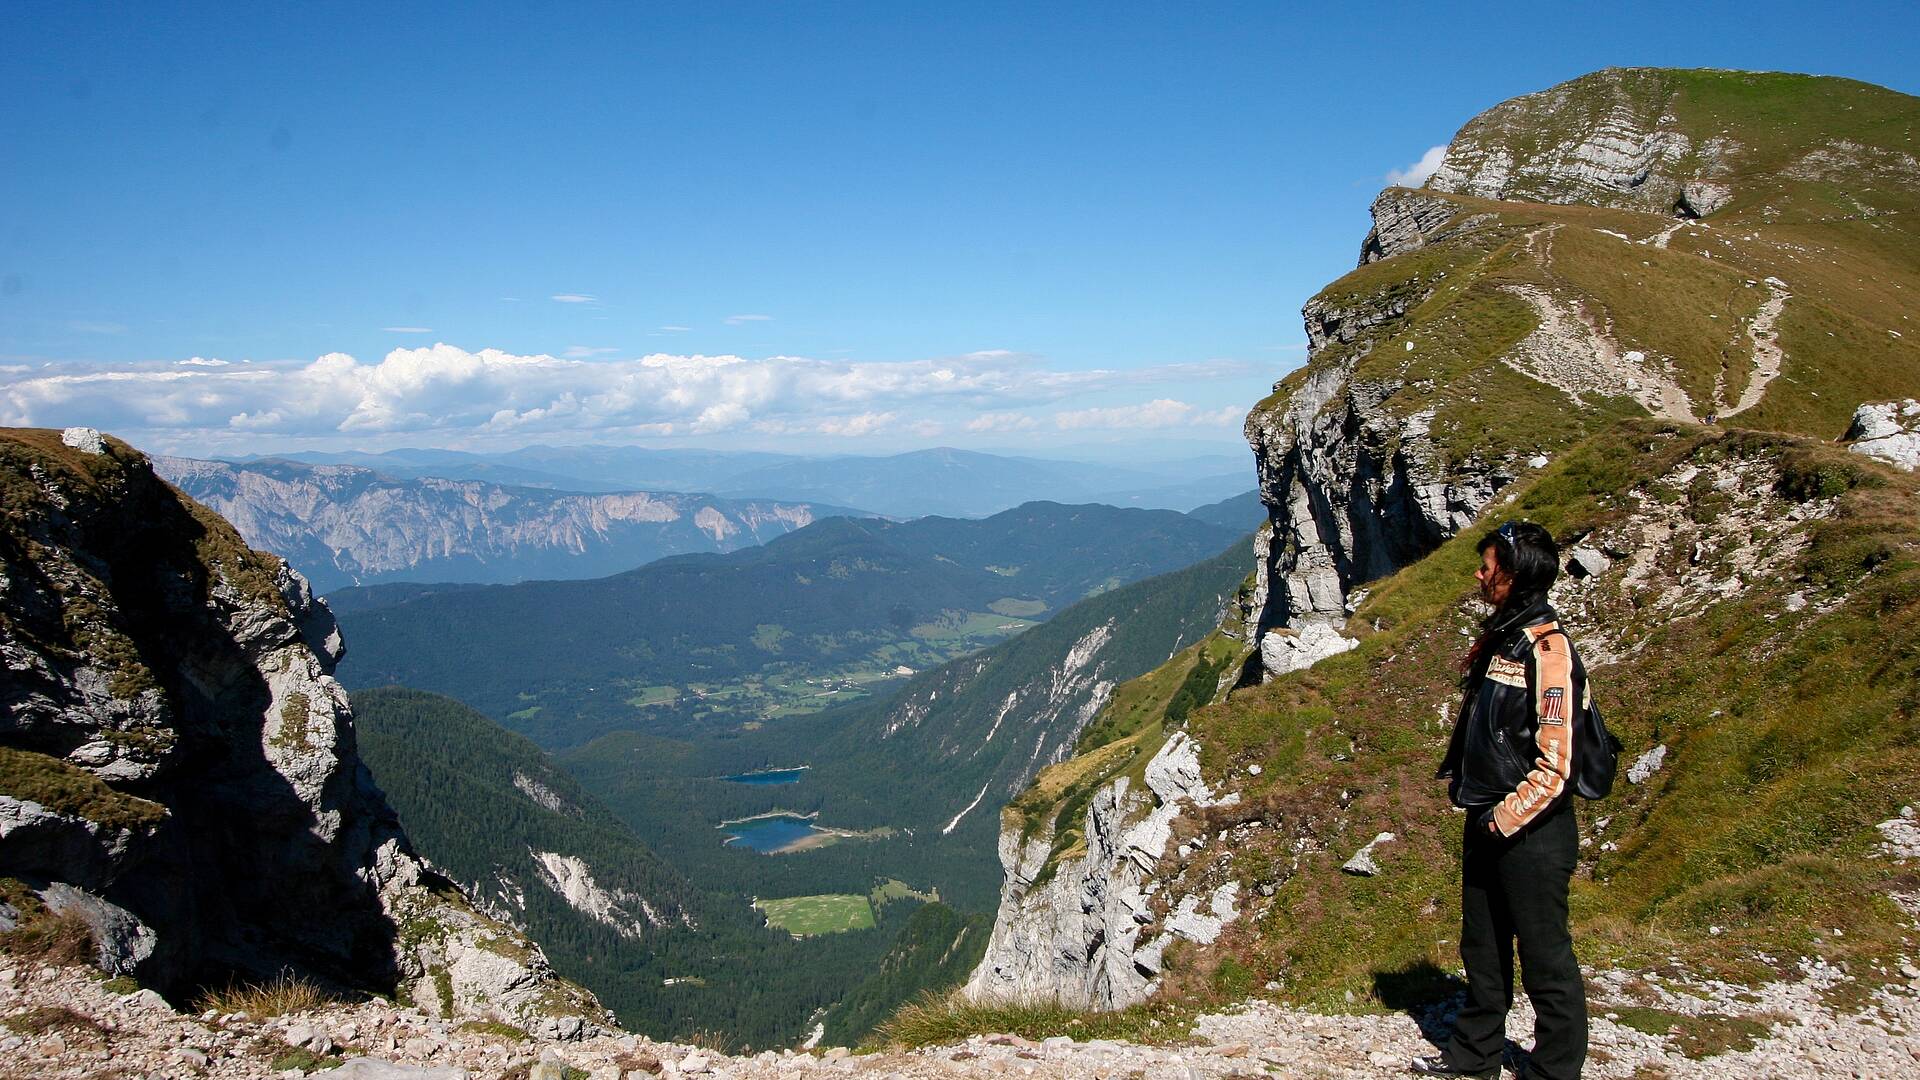 Blick auf die Weissenfelser Seen vom Mangart